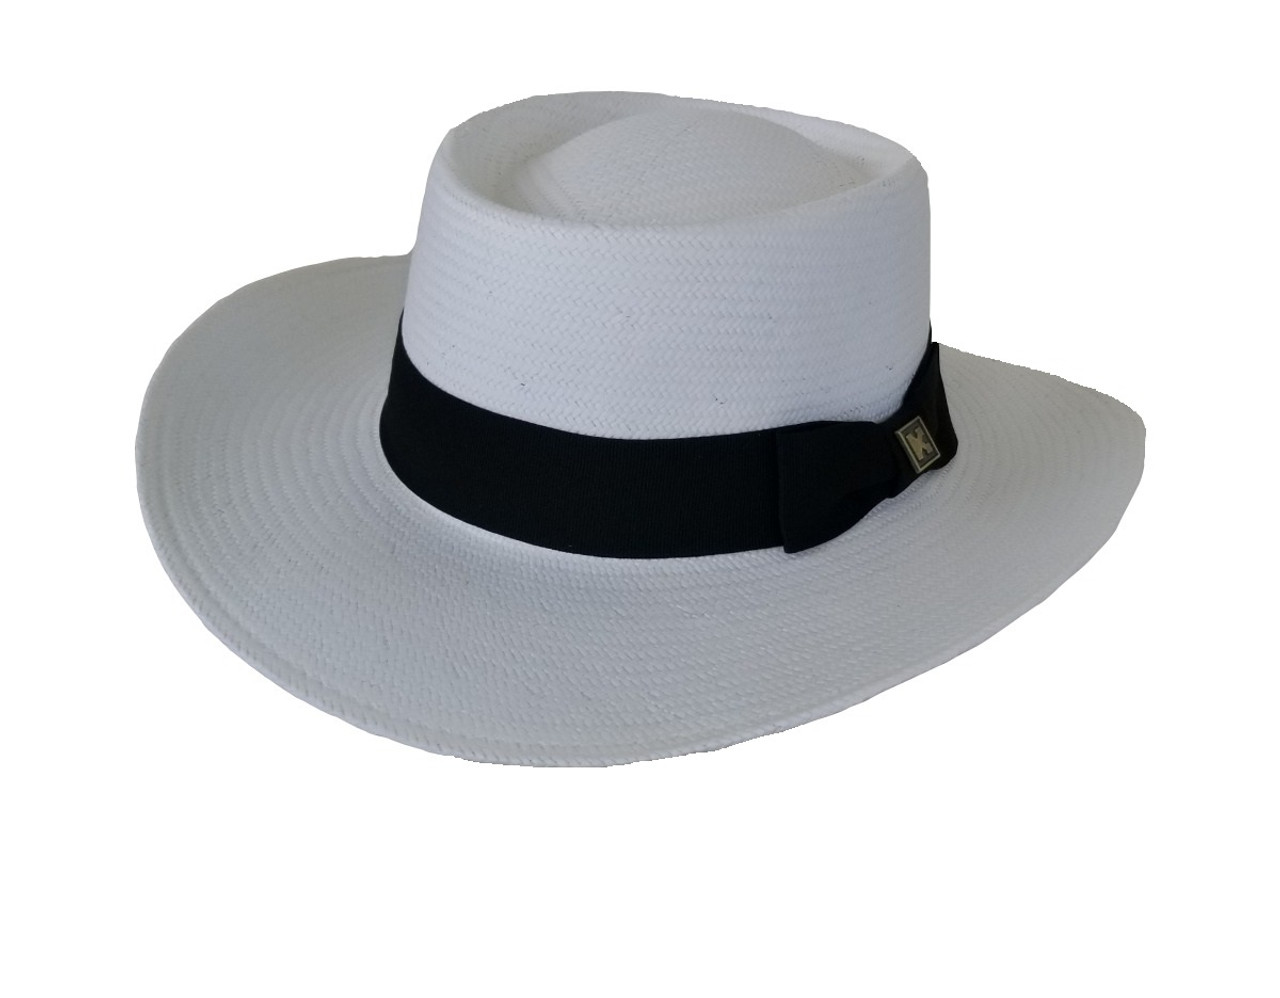 Kenny K Gambler Hat, Plantation Hat, Western, Stylish, 100% Wool, Warm -  Miami Hat Shop